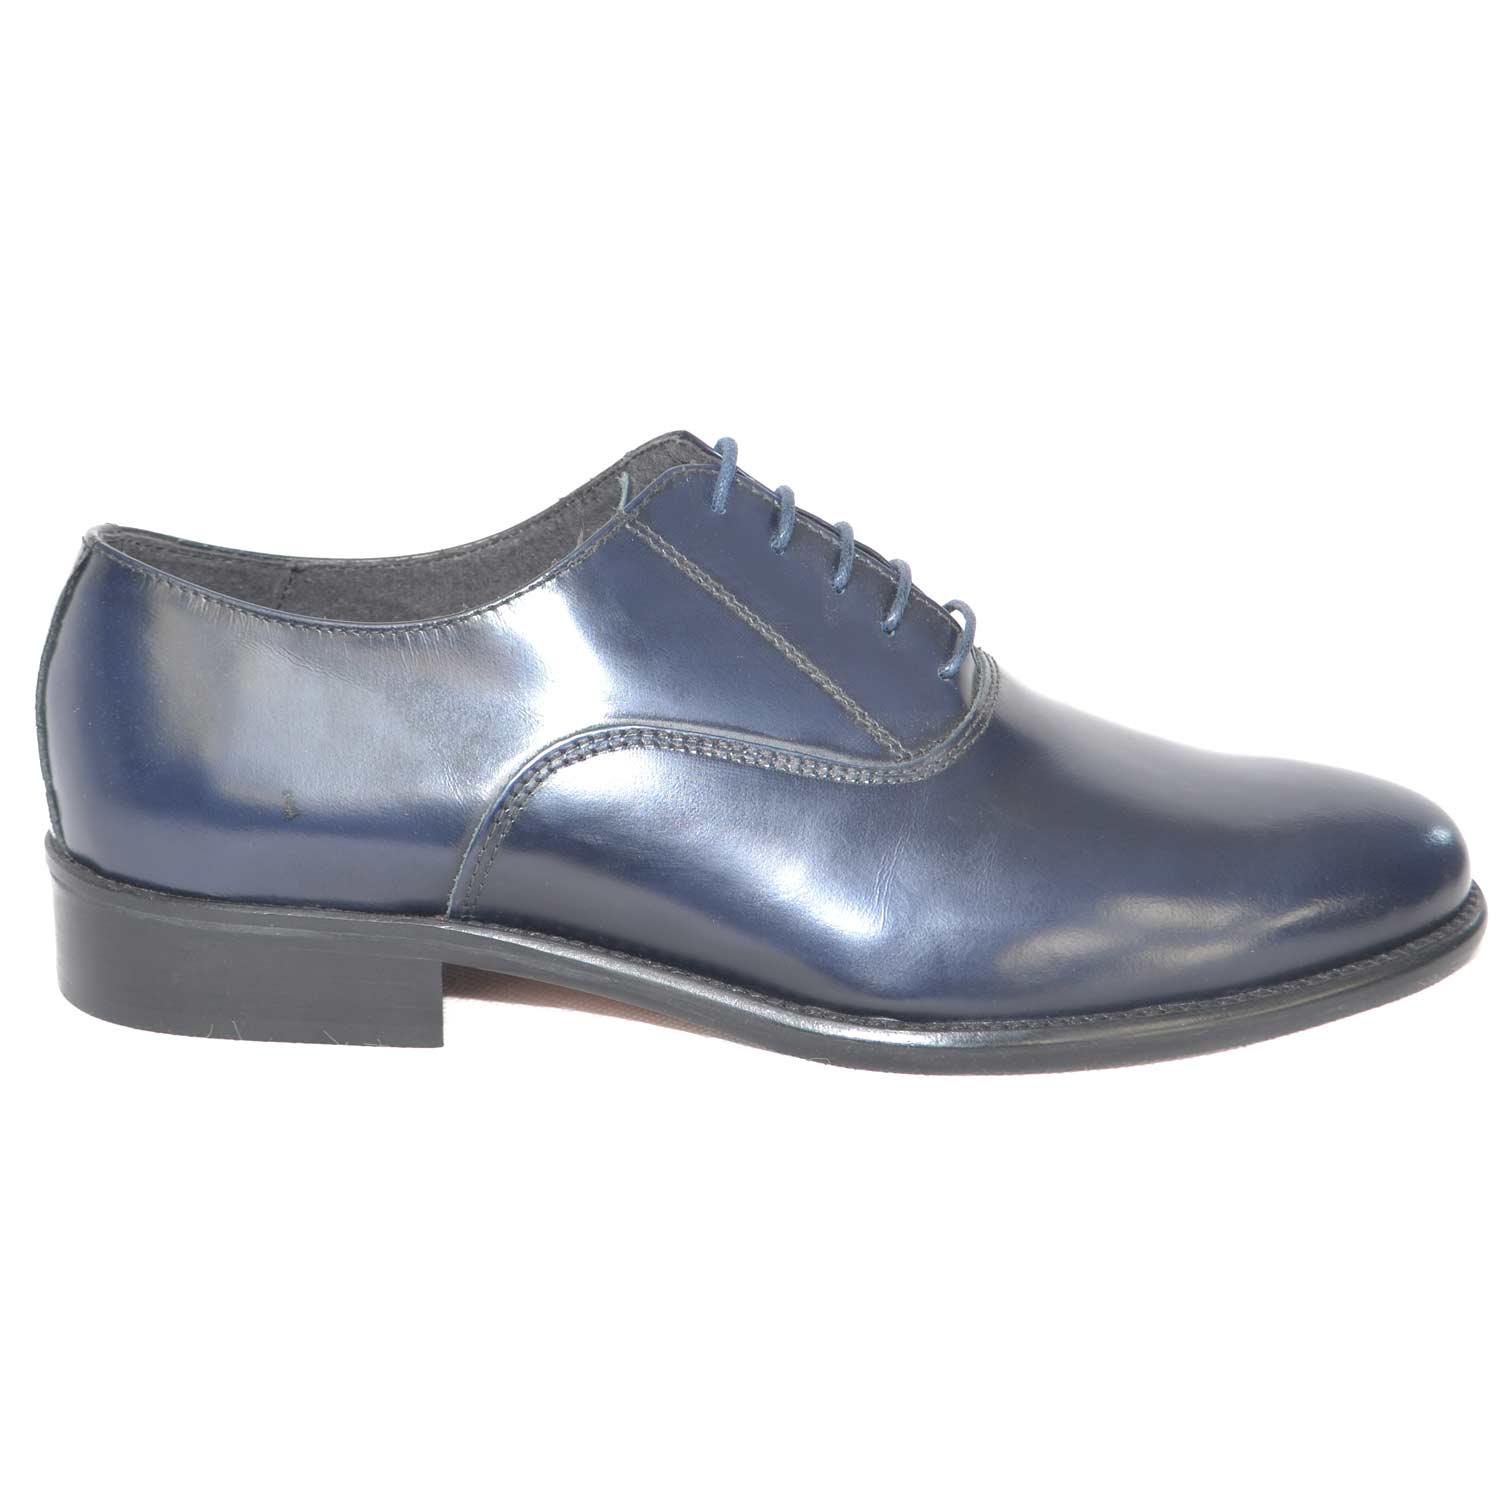 Scarpe uomo francesina blu pelle lucida fondo cuoio antiscivolo blu  stringhe genuine leather classico cerimonia uomo classiche Malu Shoes |  MaluShoes